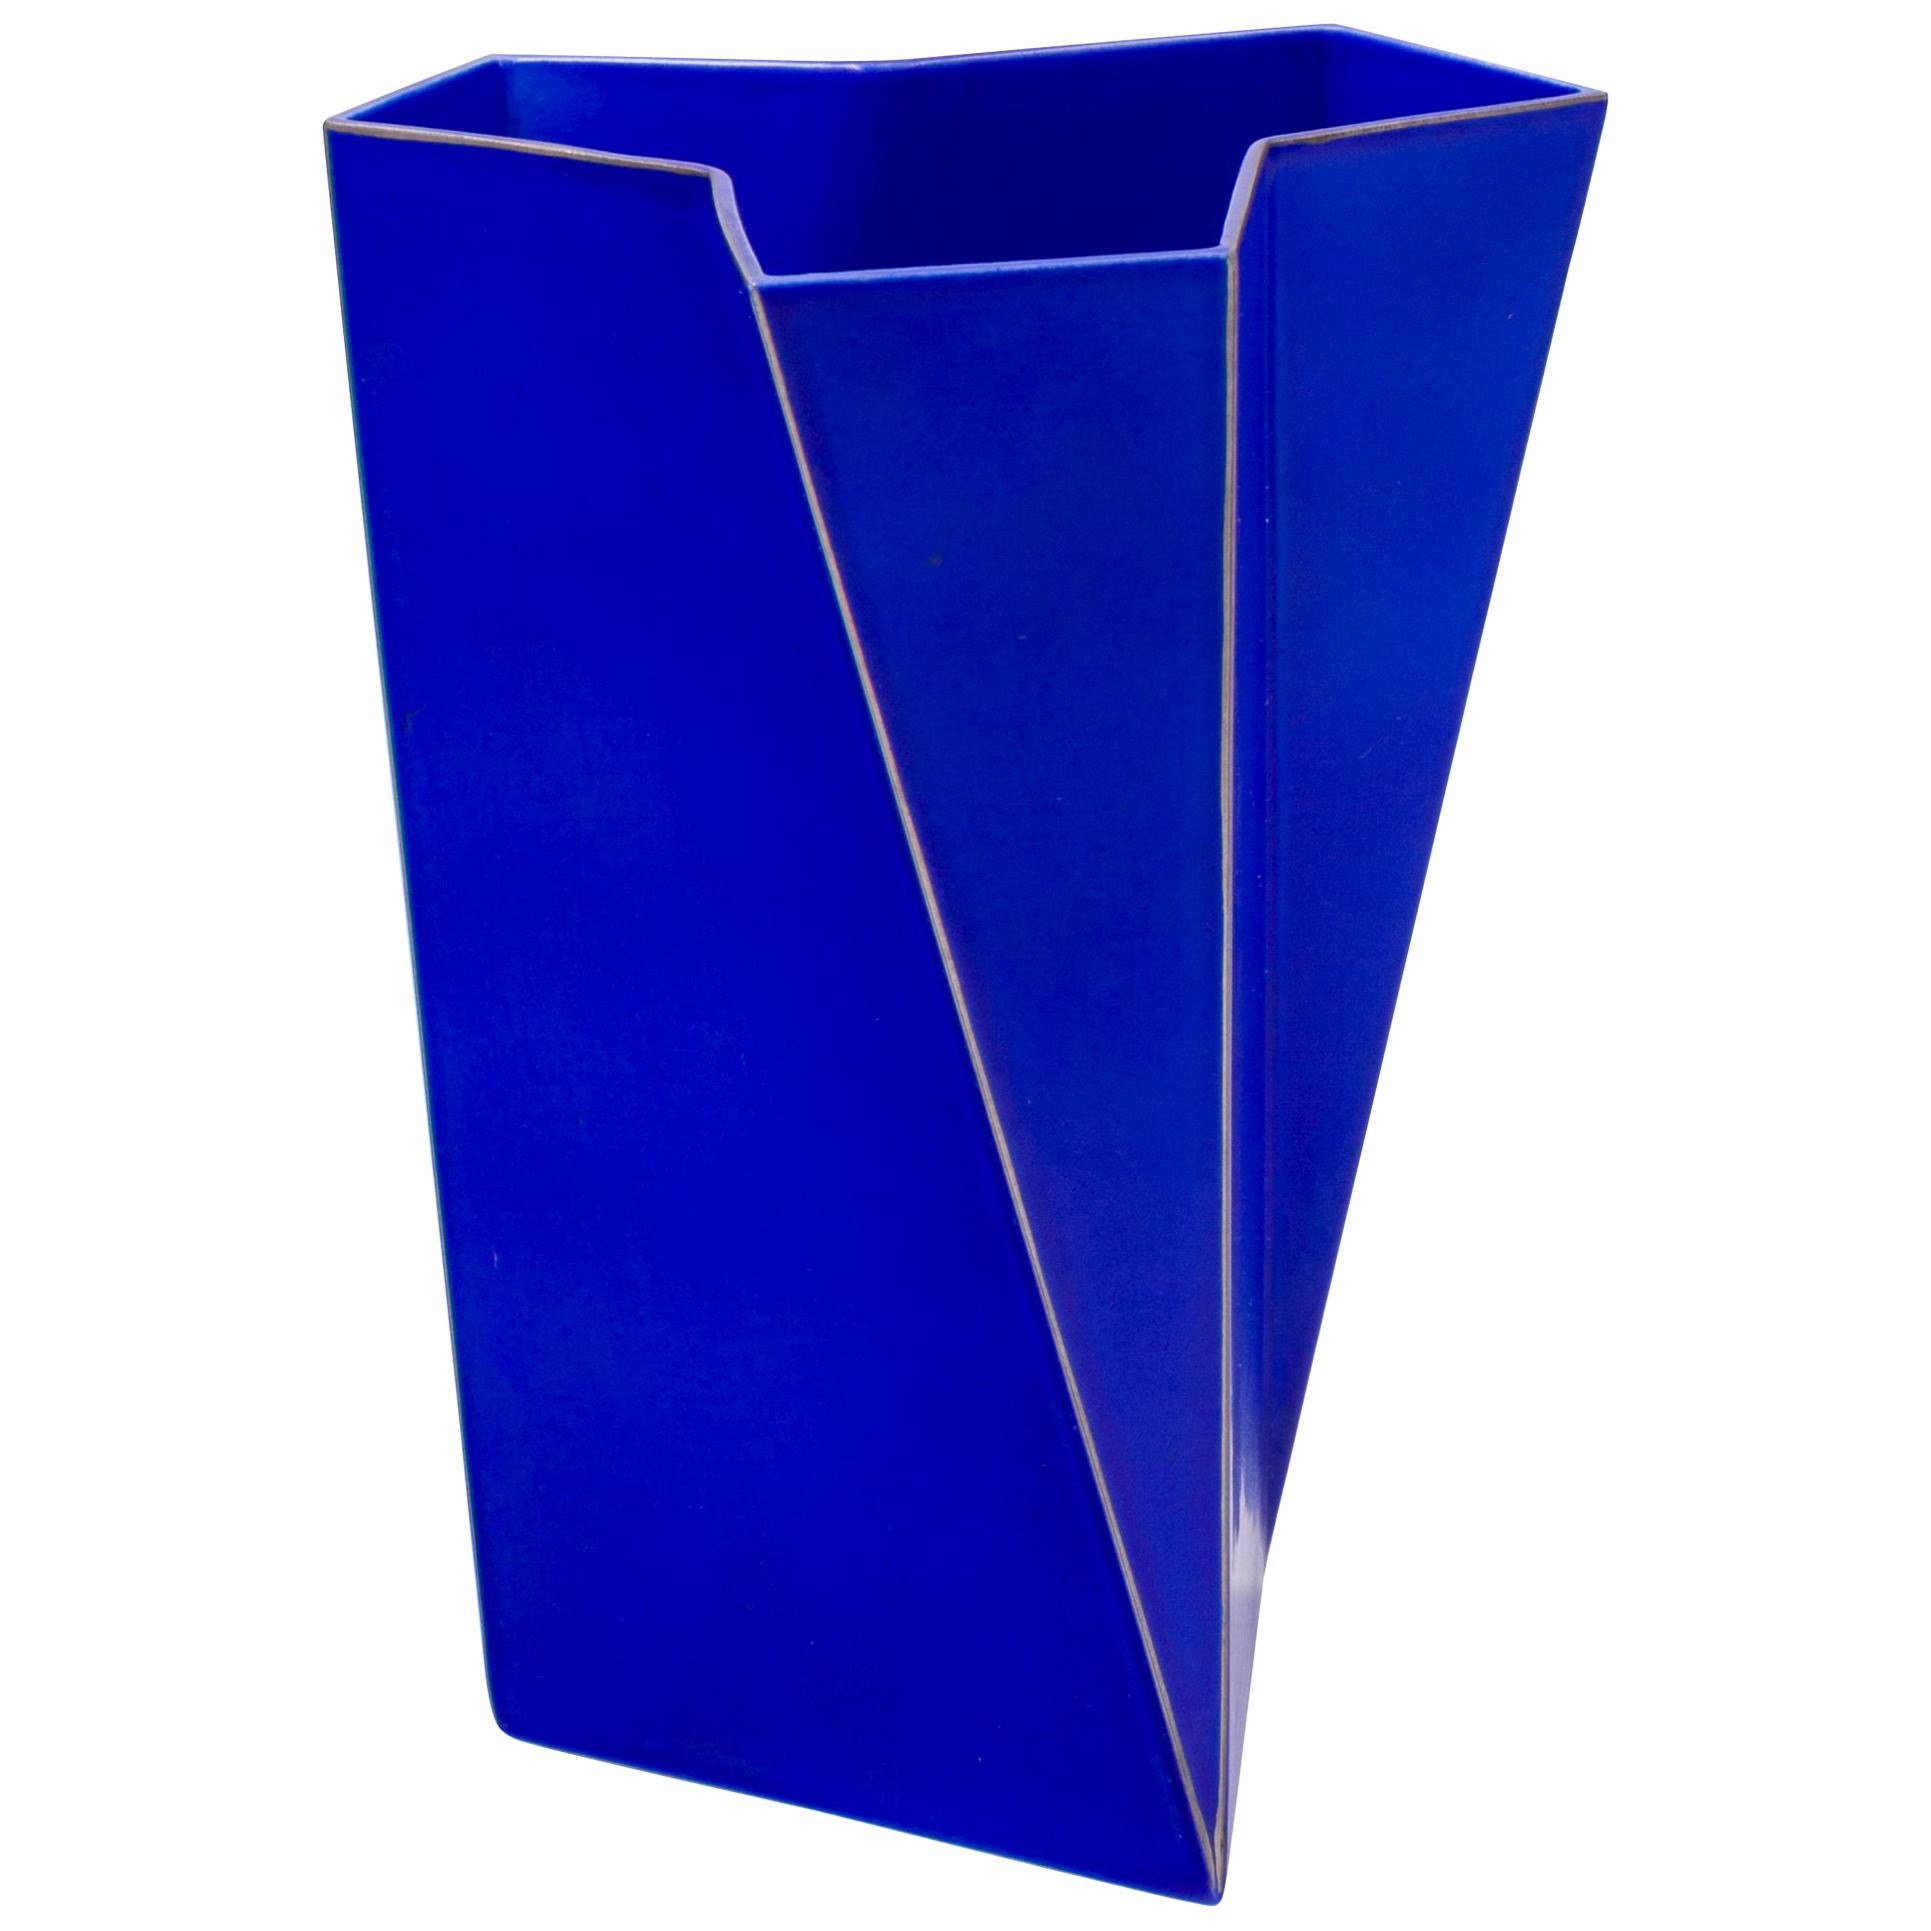 Bing & Grondahl Geometric Blue Porcelain Futura Vase by Else Kamp, Denmark 1980s